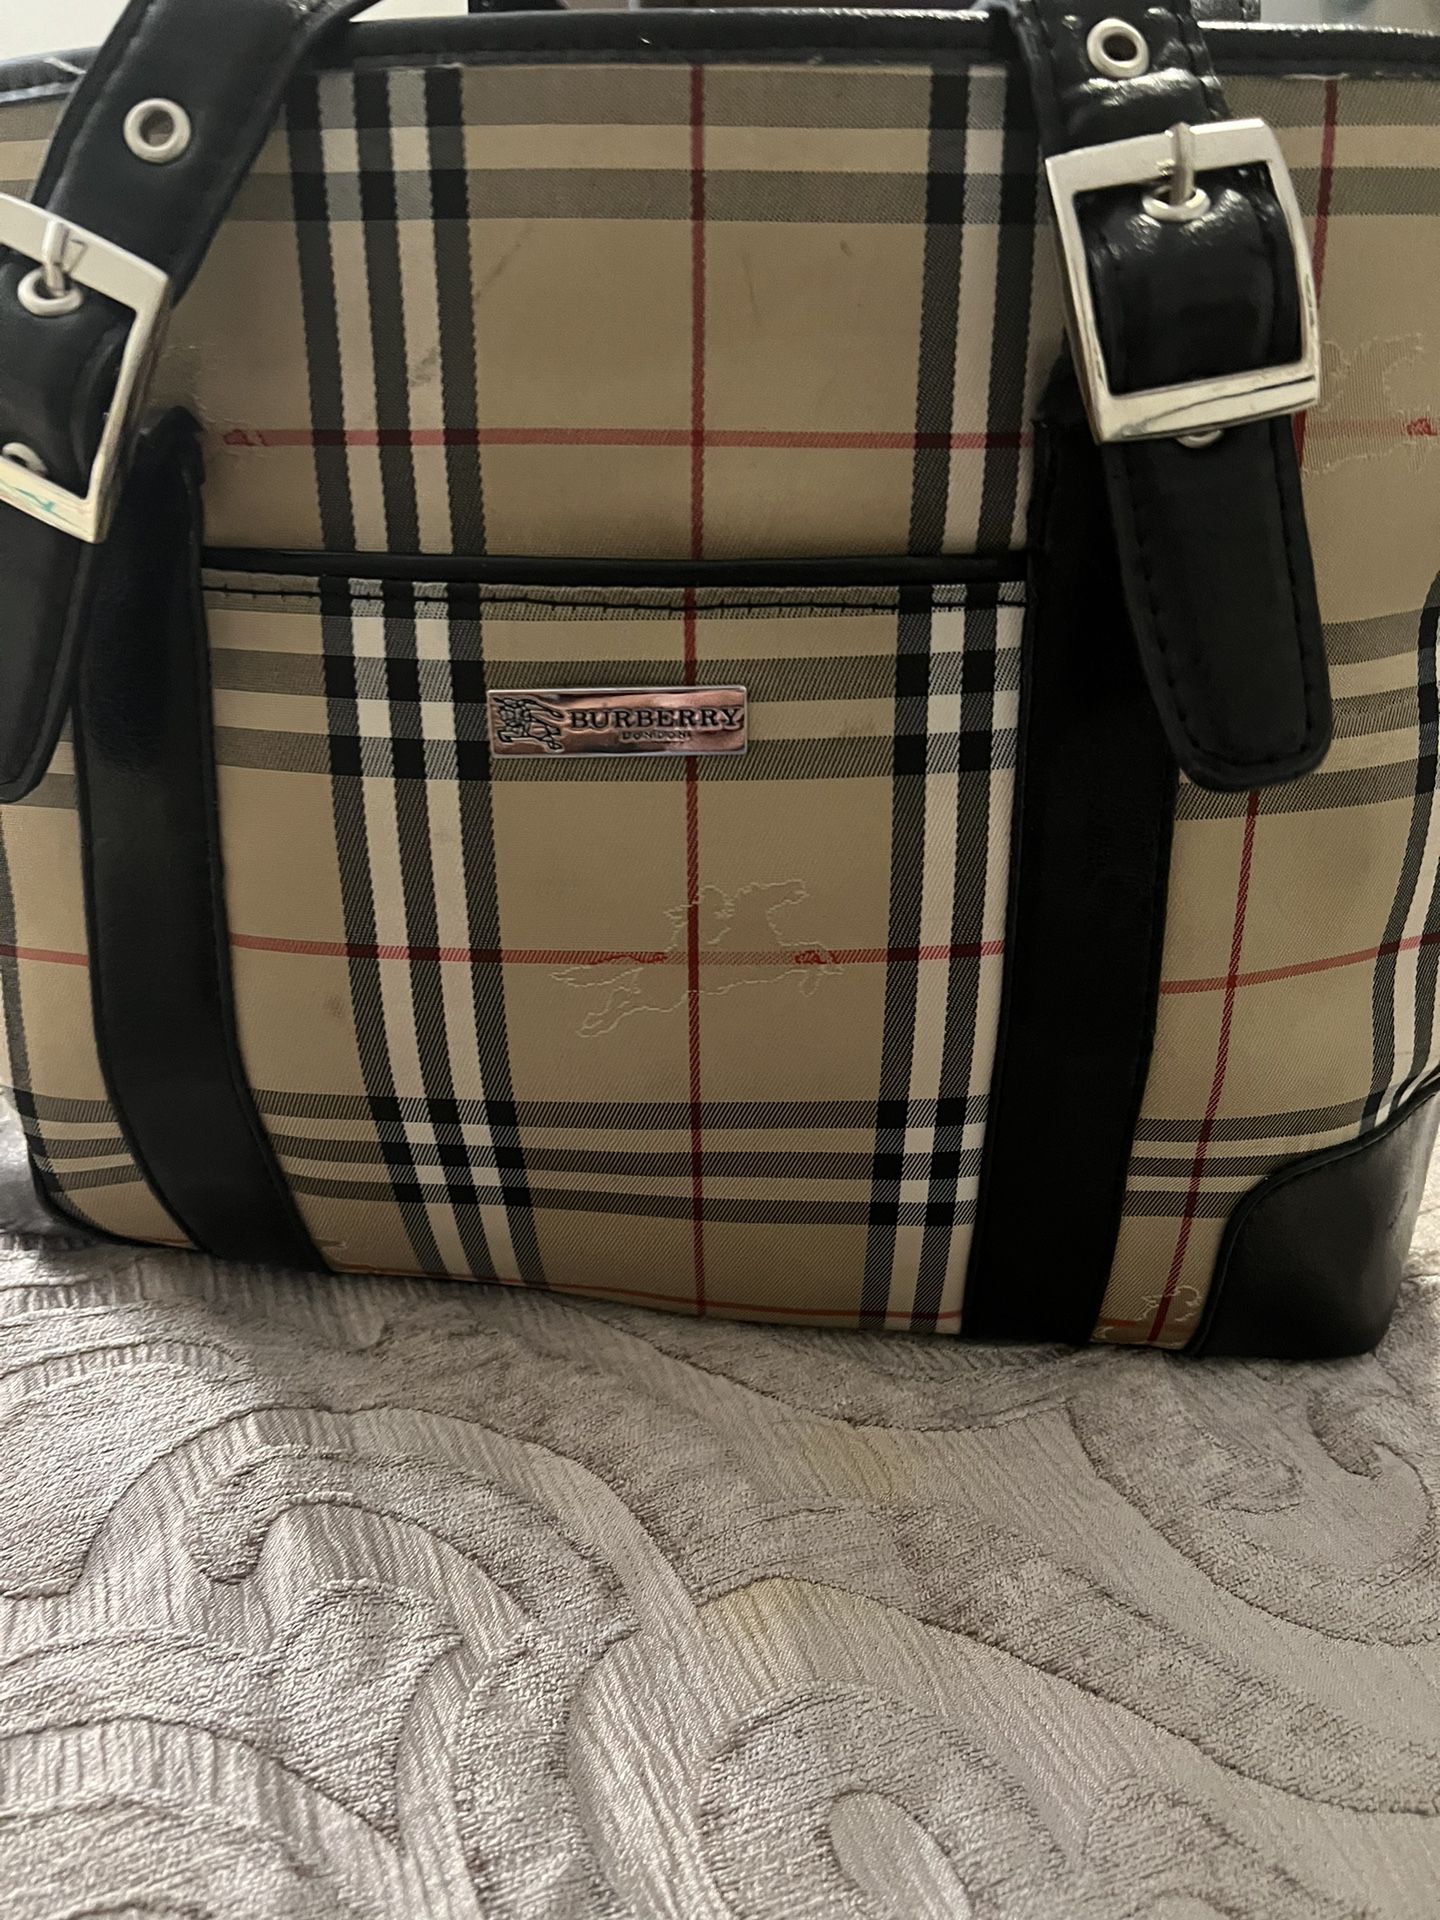  Burberry Handbag